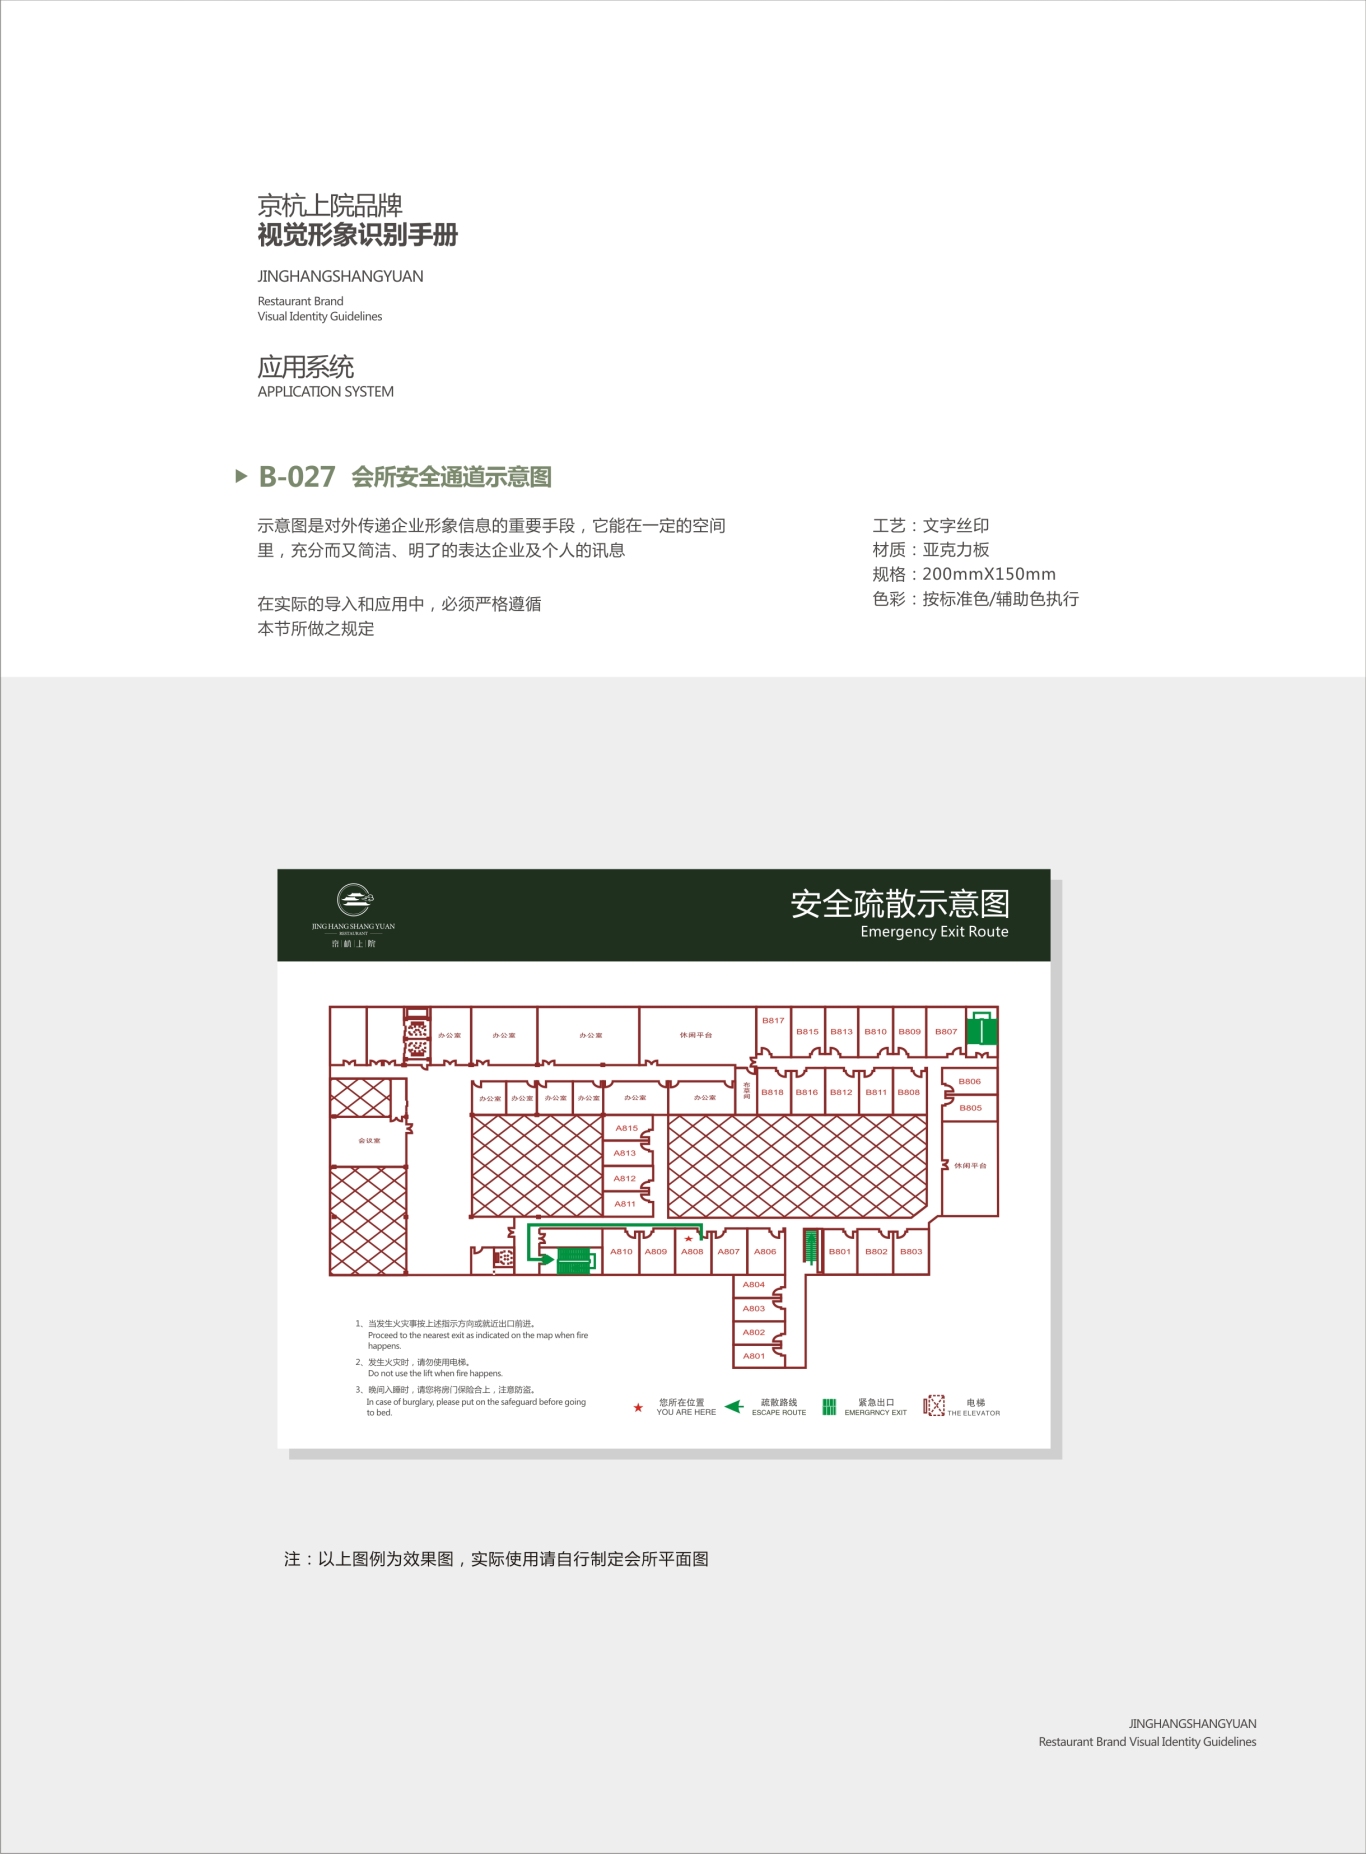 星级私人会所京杭上院VI设计图56